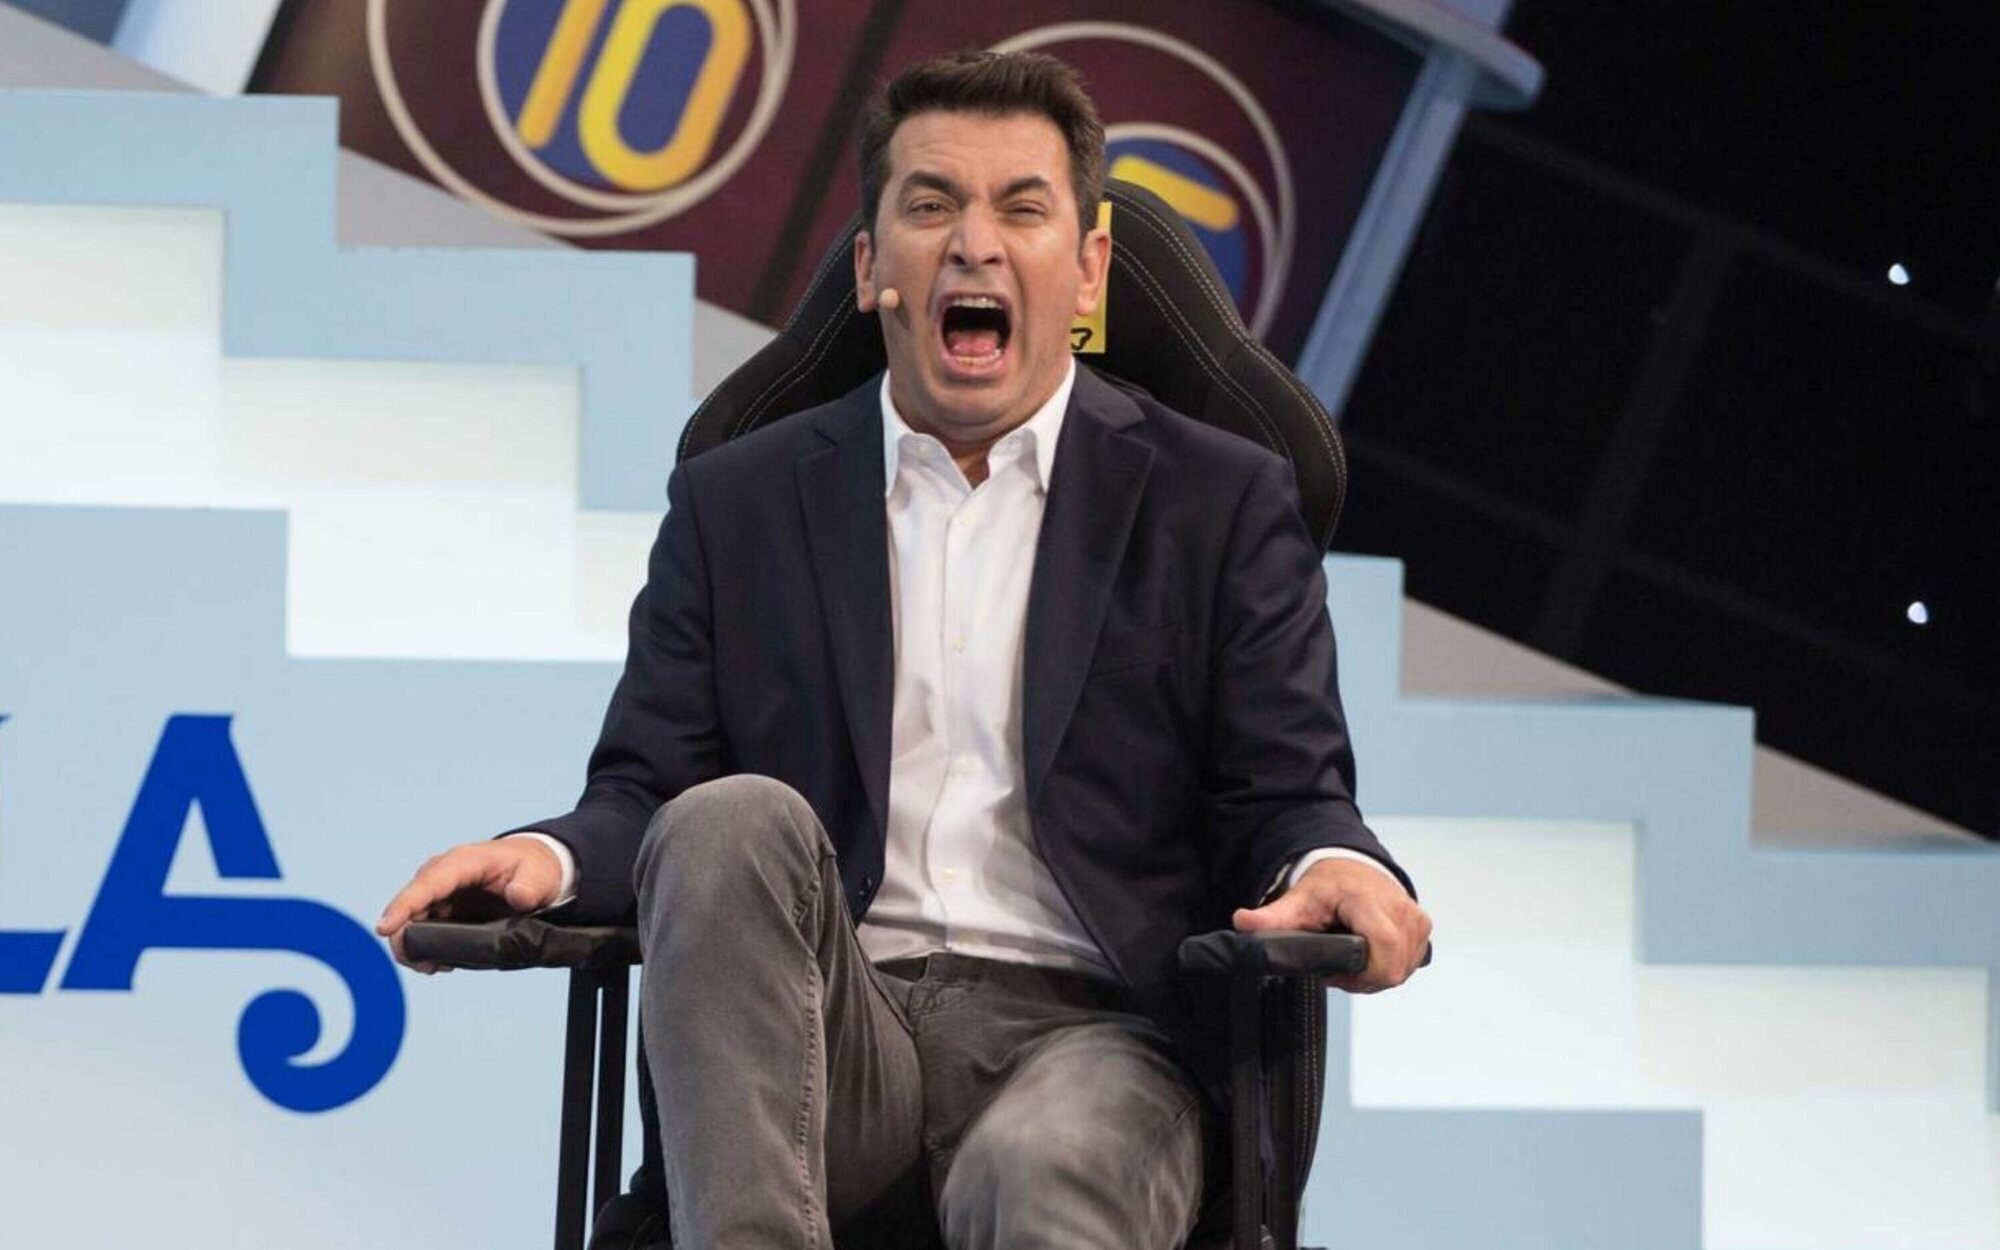 'Me resbala' retoma su quinta temporada el 4 de agosto en Antena 3 tras más de un año de parón